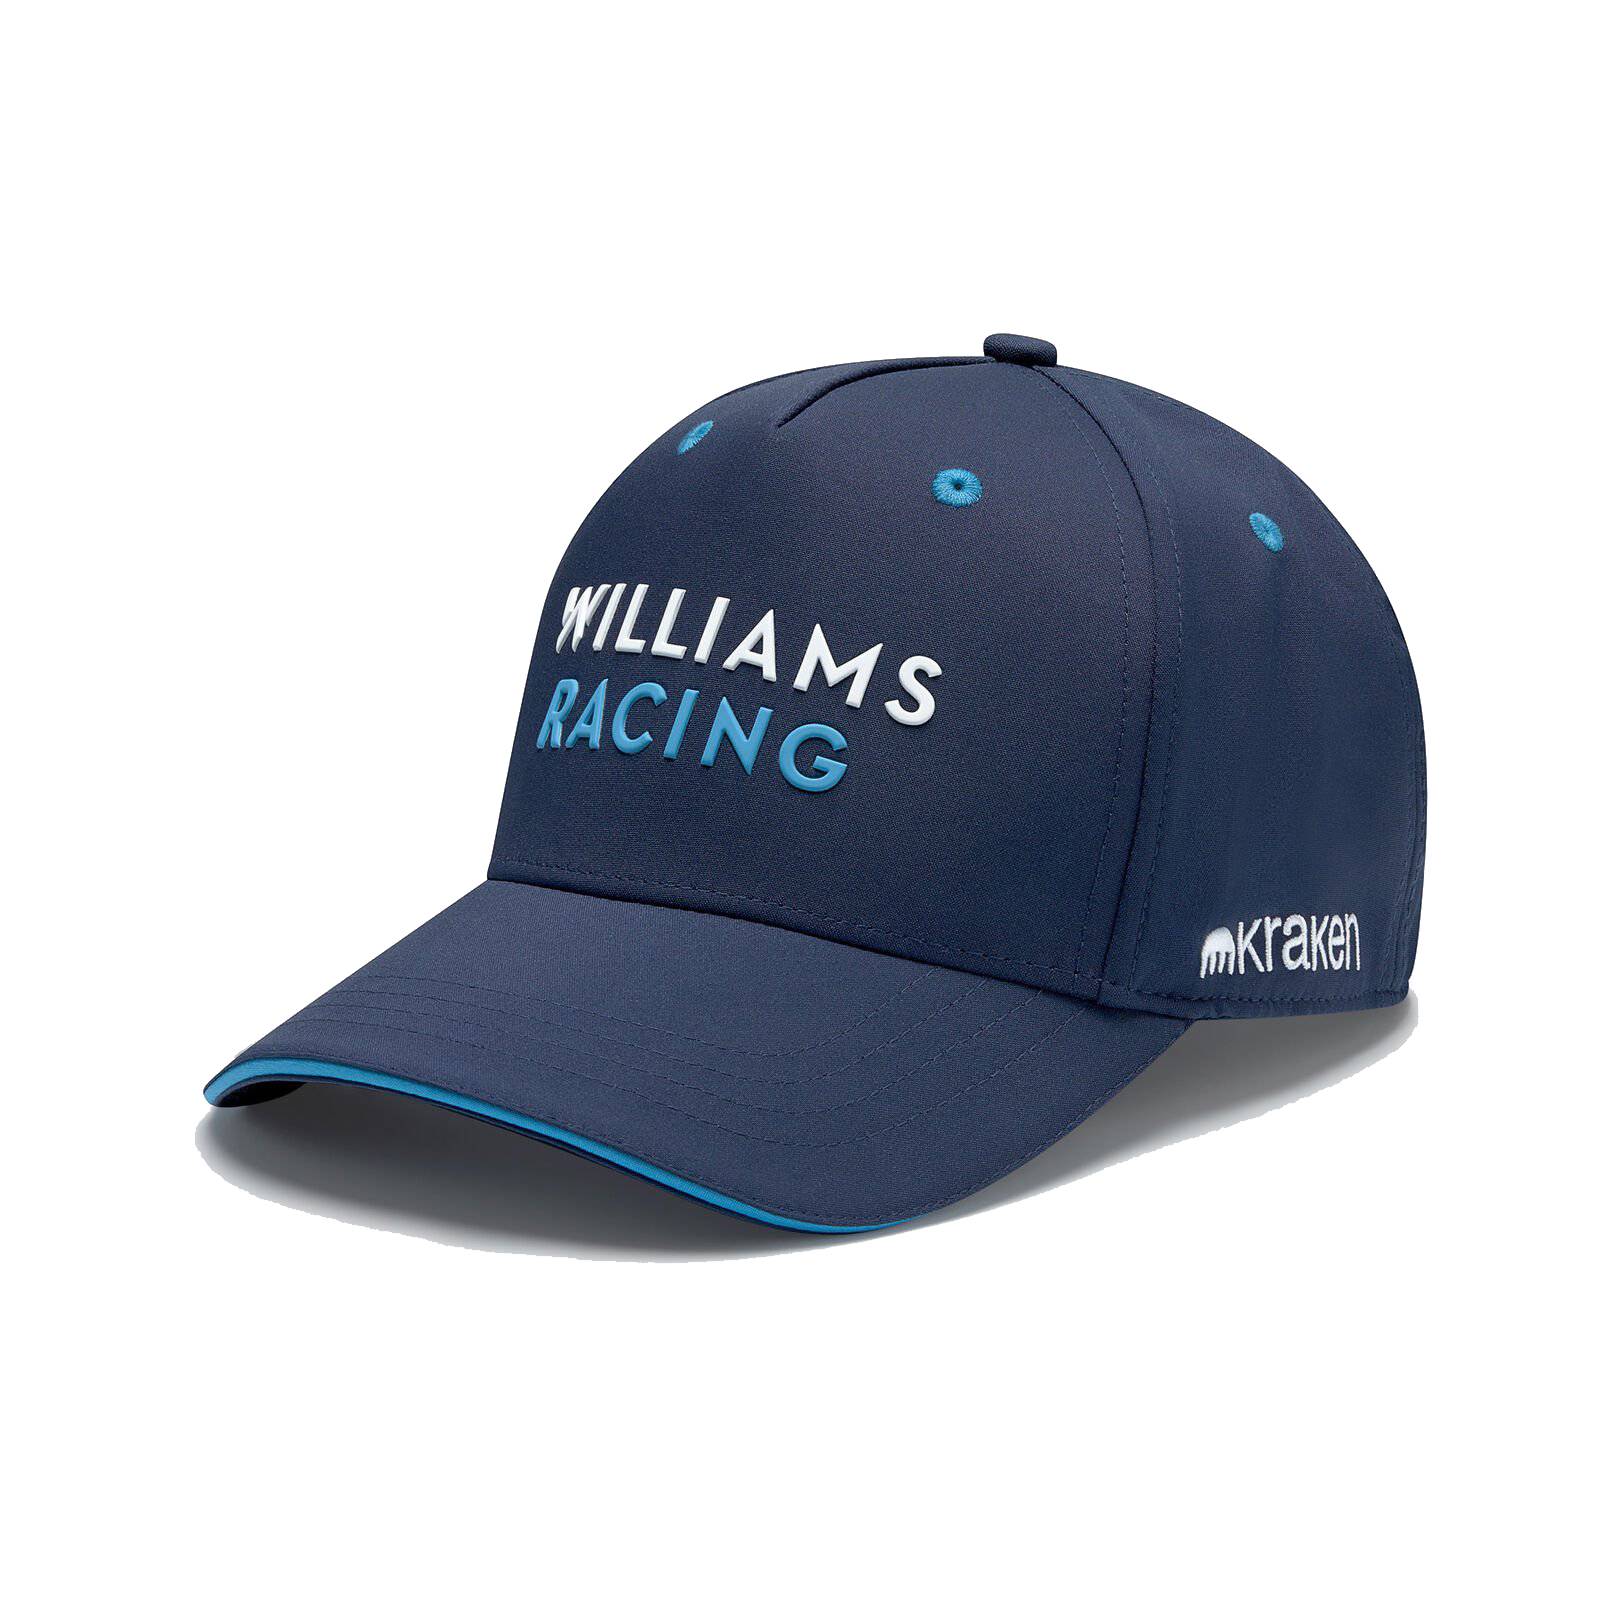 Williams Racing Puma Team Cap - Blau